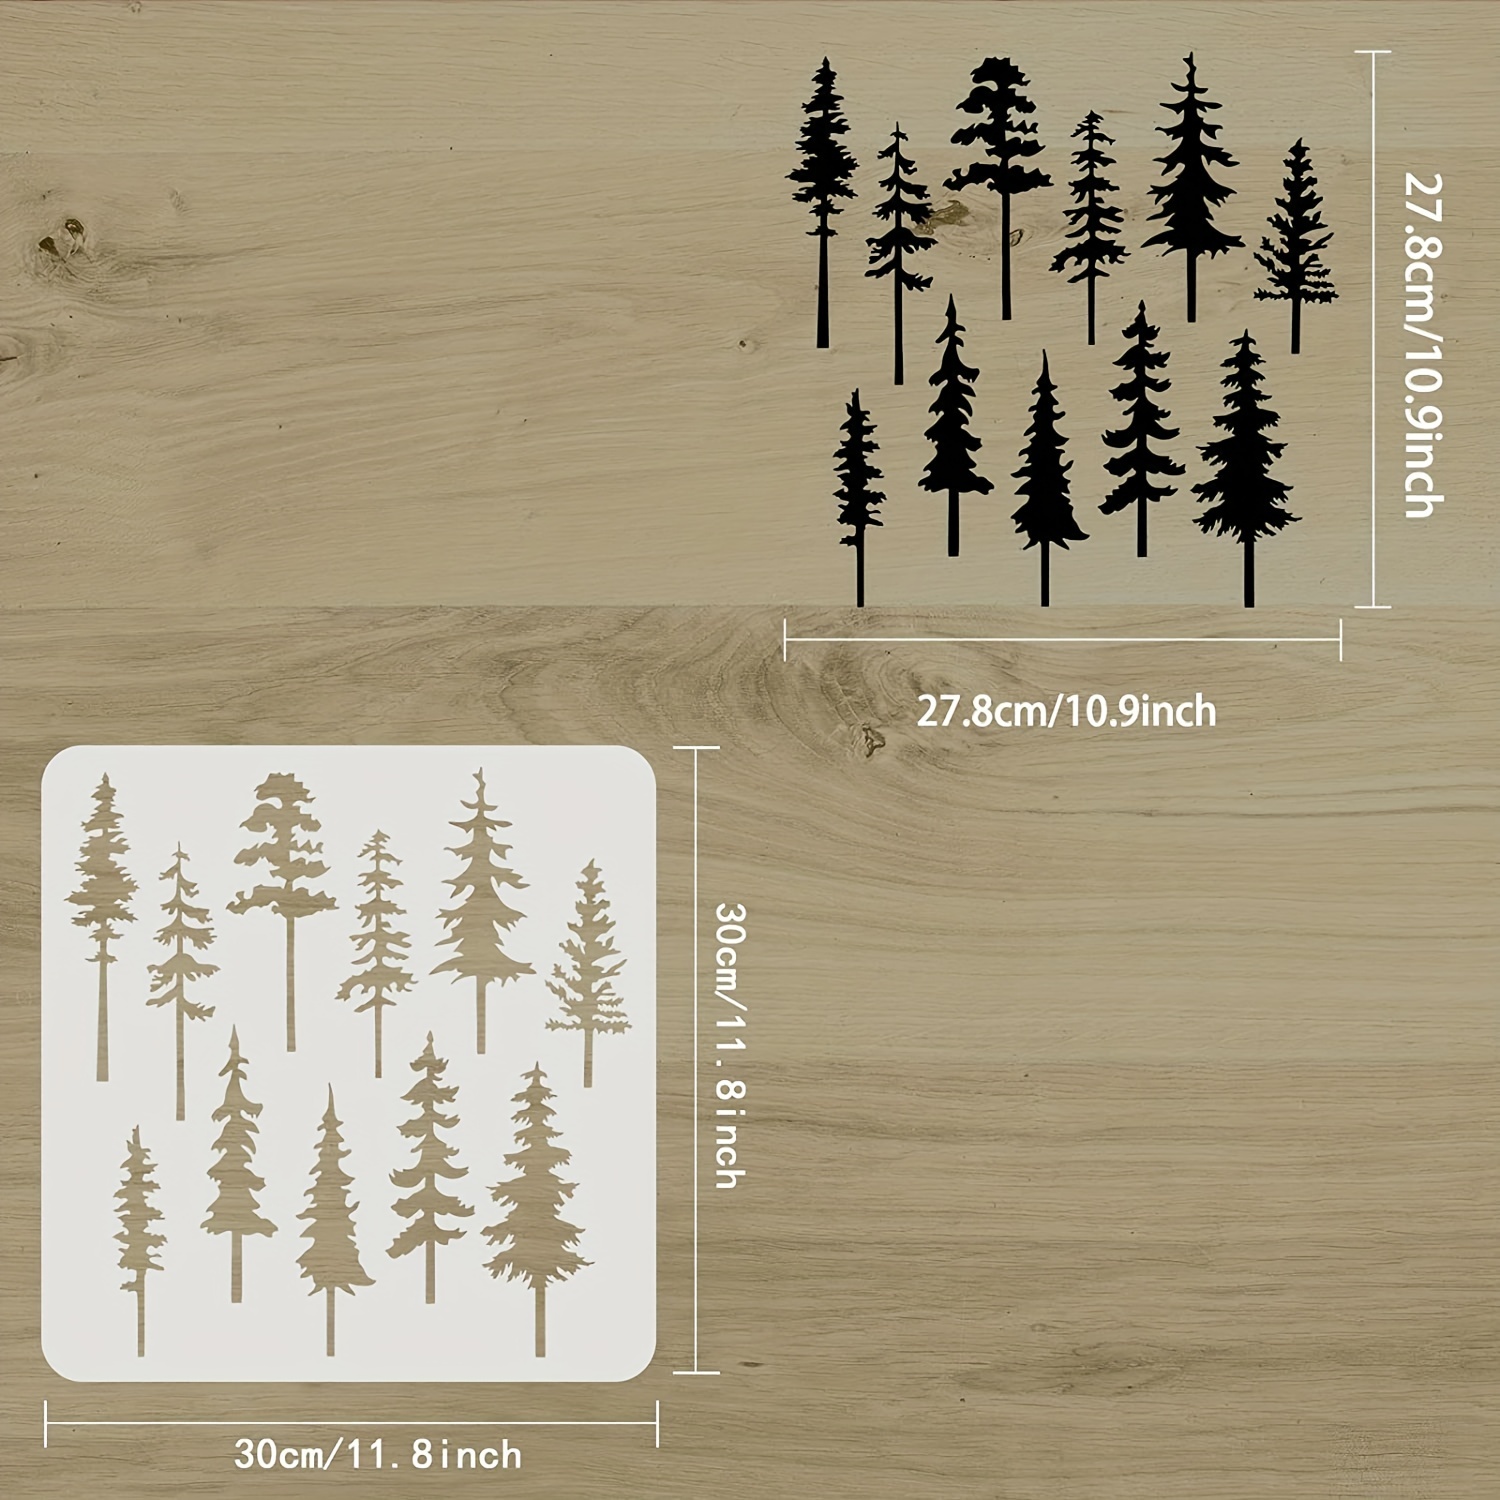 Plaster Stencil Life Sized Pine Tree - Walls Stencils, Plaster